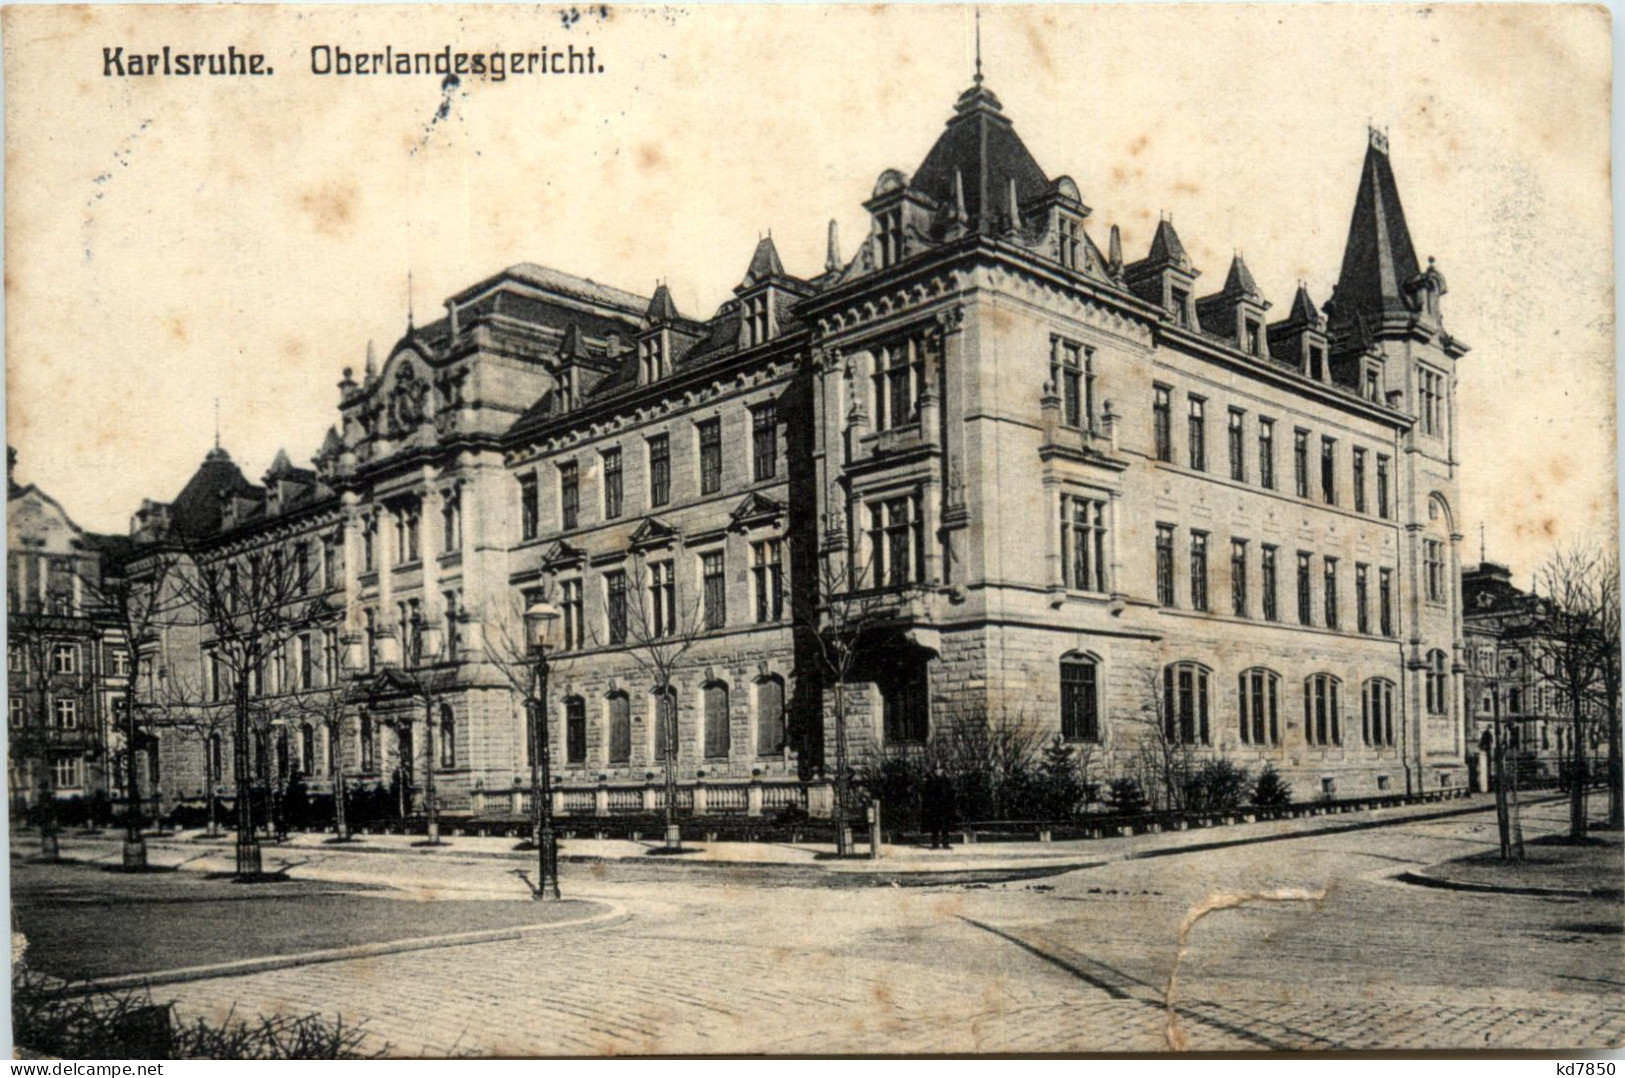 Karlsruhe - Oberlandesgericht - Karlsruhe